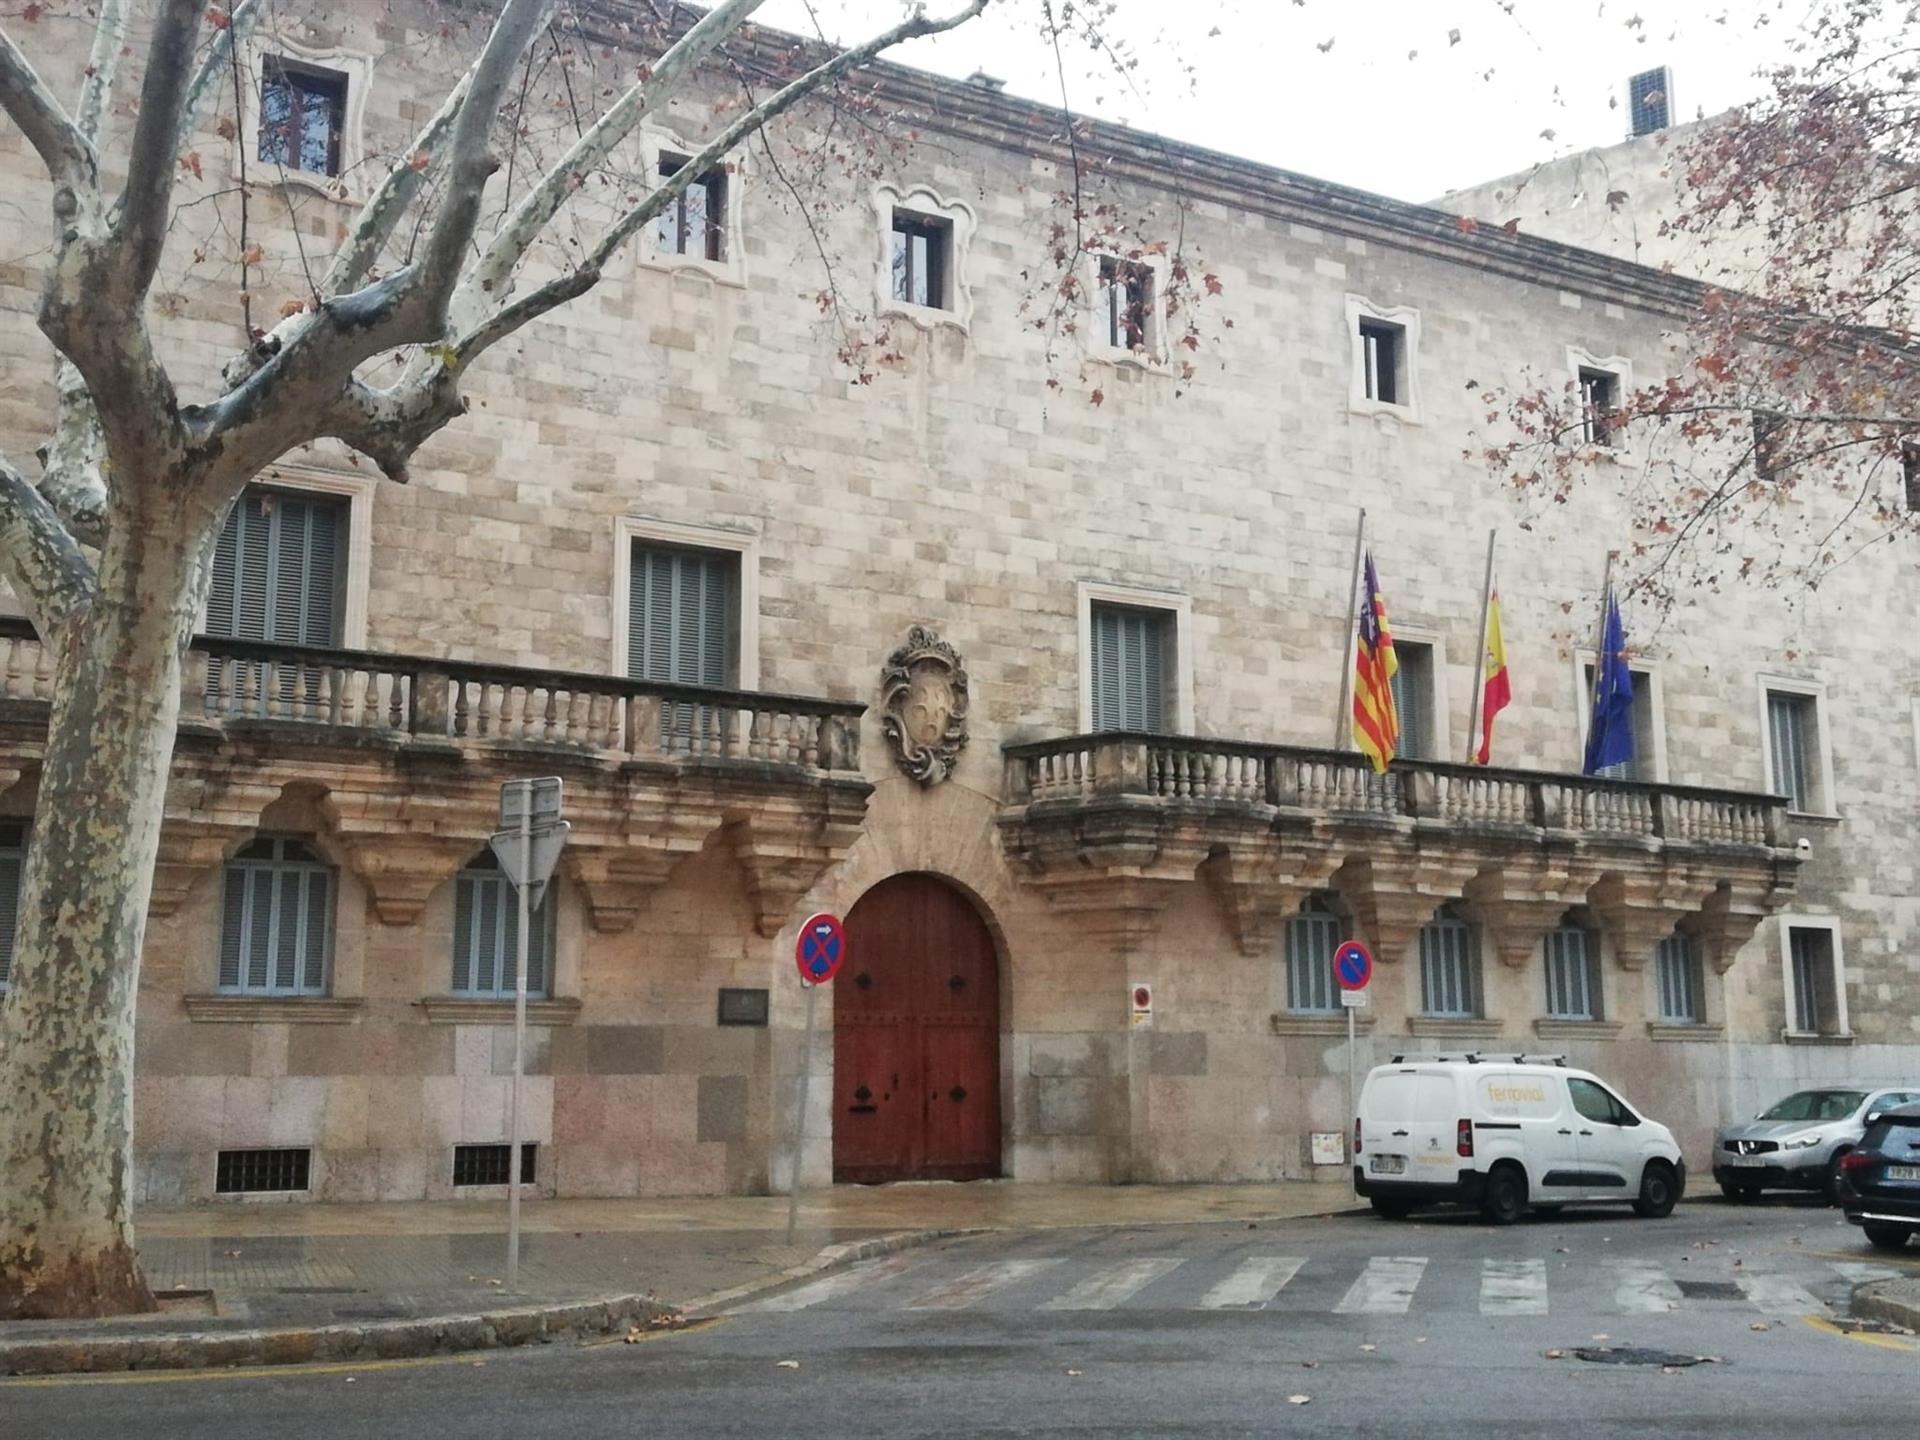 El Palacio de Justicia, sede del Tribunal Superior de Justicia de Baleares (TSJIB) y la Audiencia Provincial, en la plaza Weyler de Palma. - EUROPA PRESS - Archivo